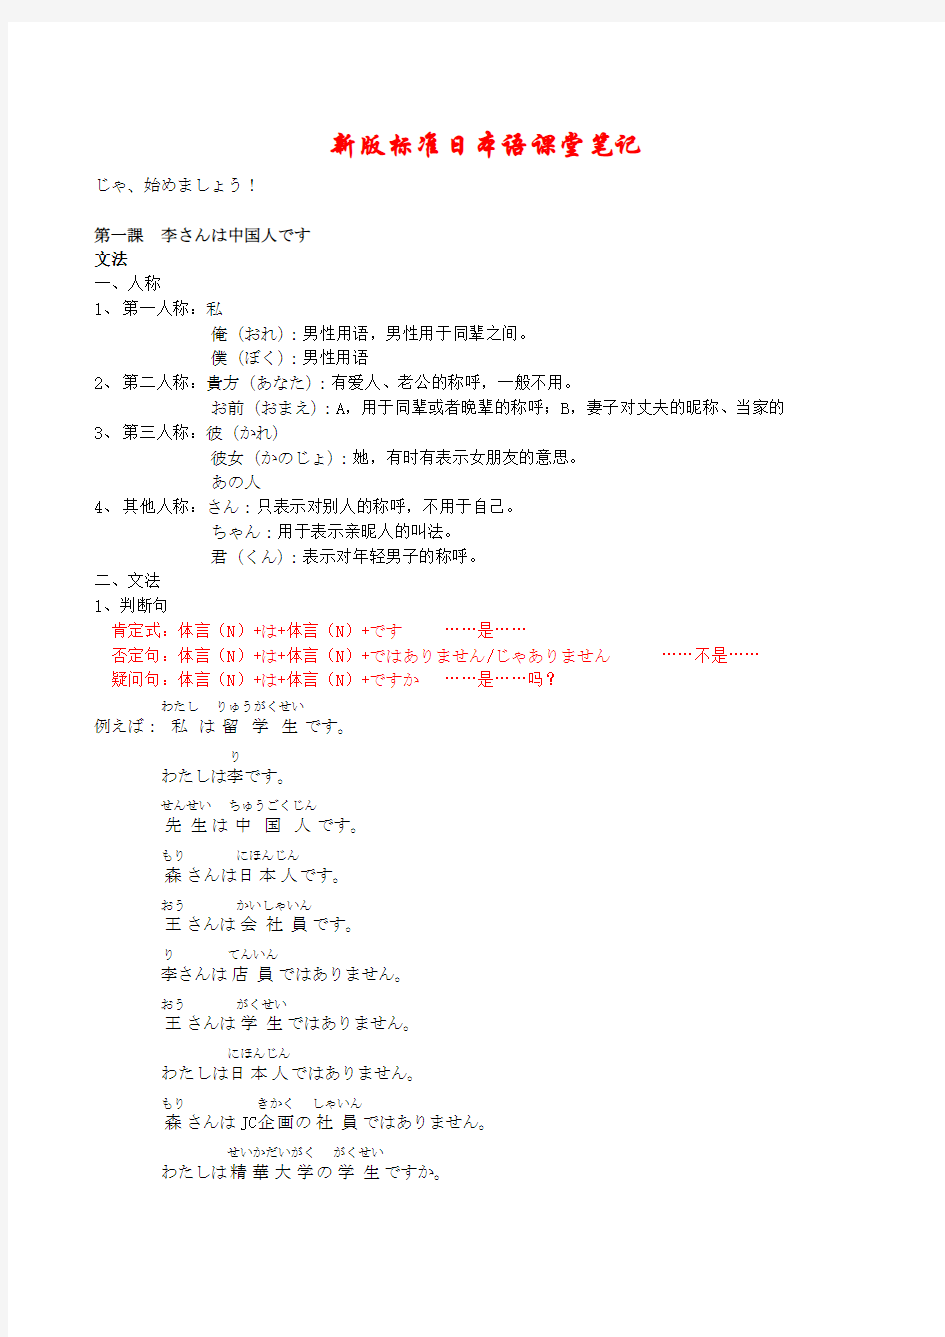 新版标准日本语初级上册课堂笔记